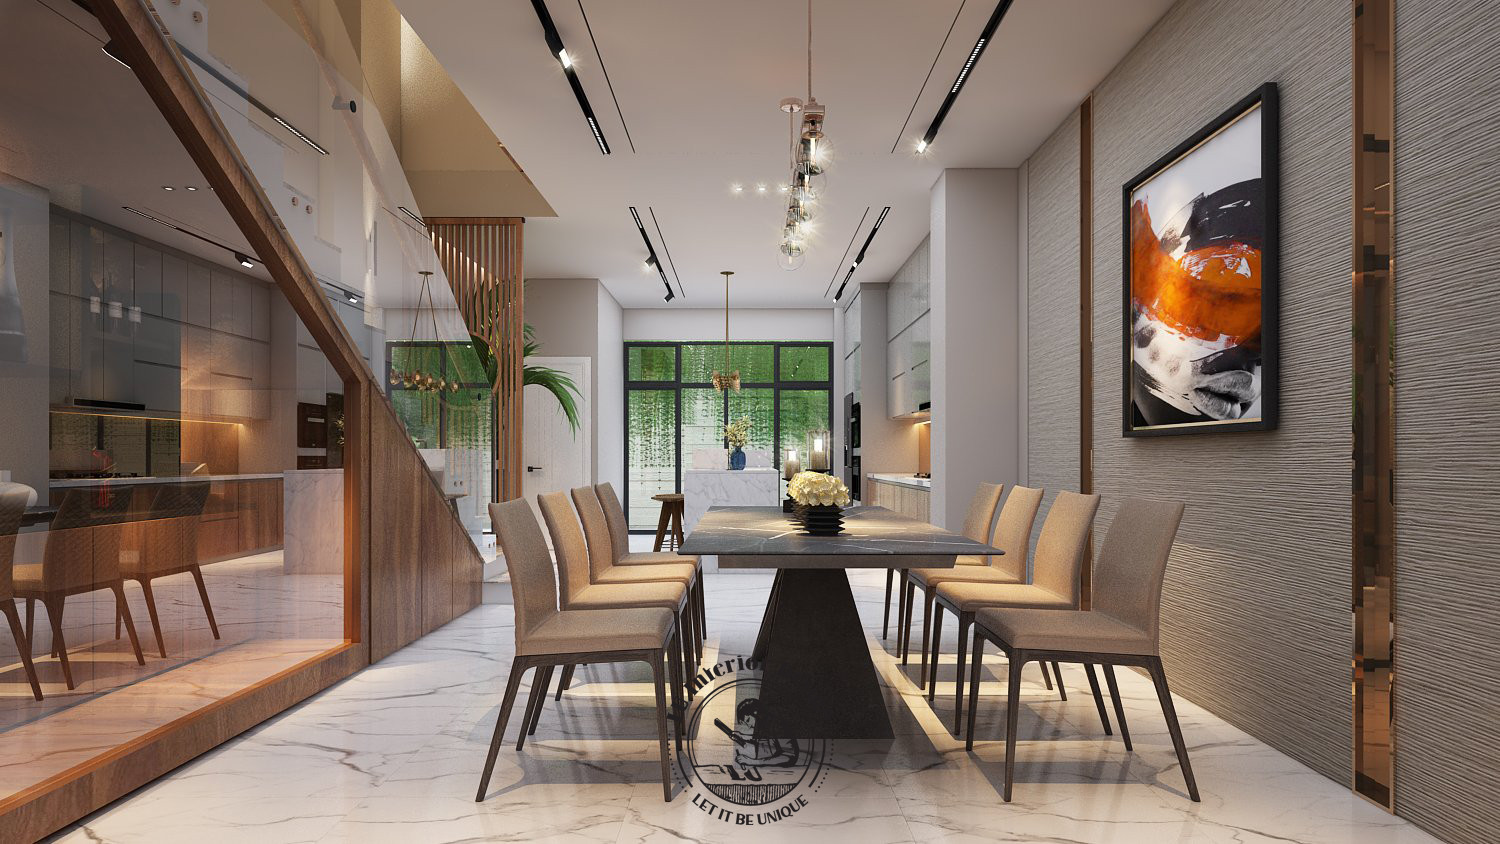 Bàn ăn là chủ thể trung tâm trong trang trí nội thất phòng bếp | Dự án Townhouse Vũng Tàu - LU Design thực hiện.